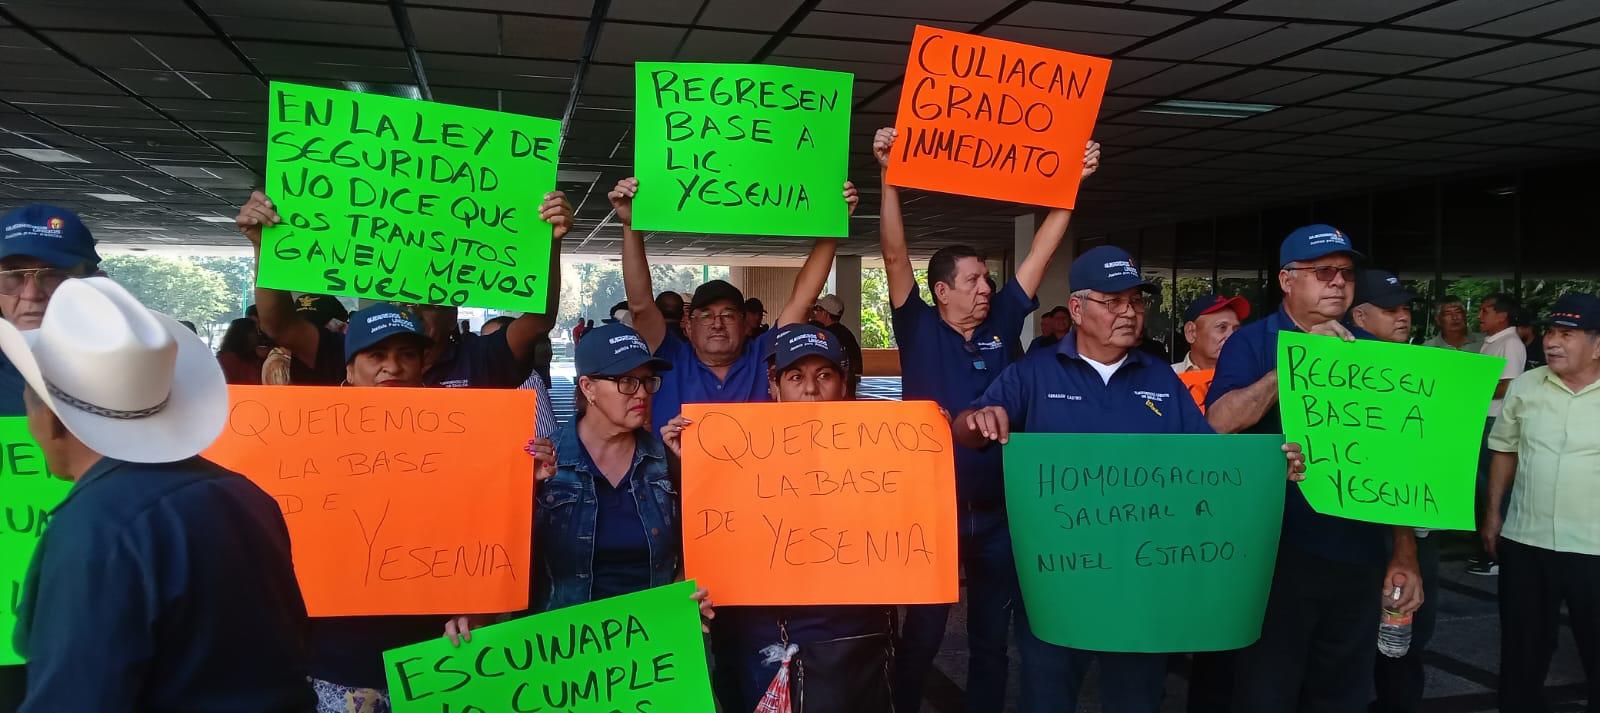 $!Policías jubilados se manifiestan en el Palacio de Gobierno de Sinaloa